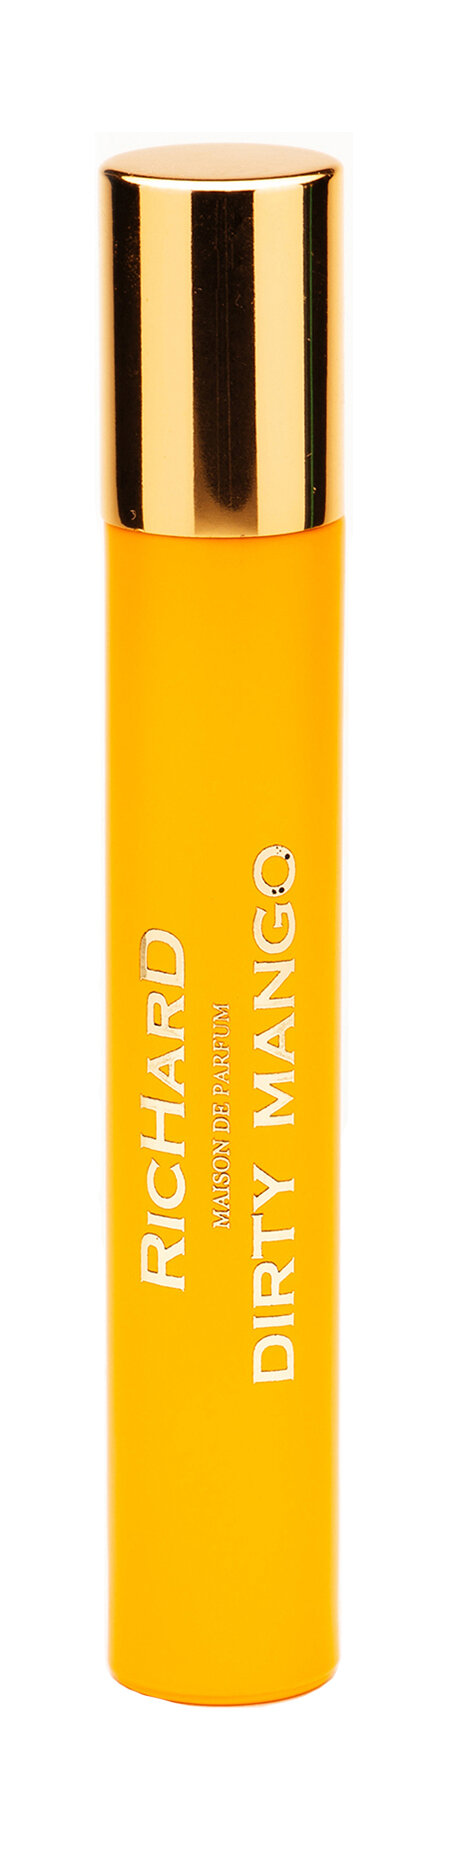 RICHARD MAISON DE PARFUM Dirty Mango Парфюмерная вода унисекс, 10 мл